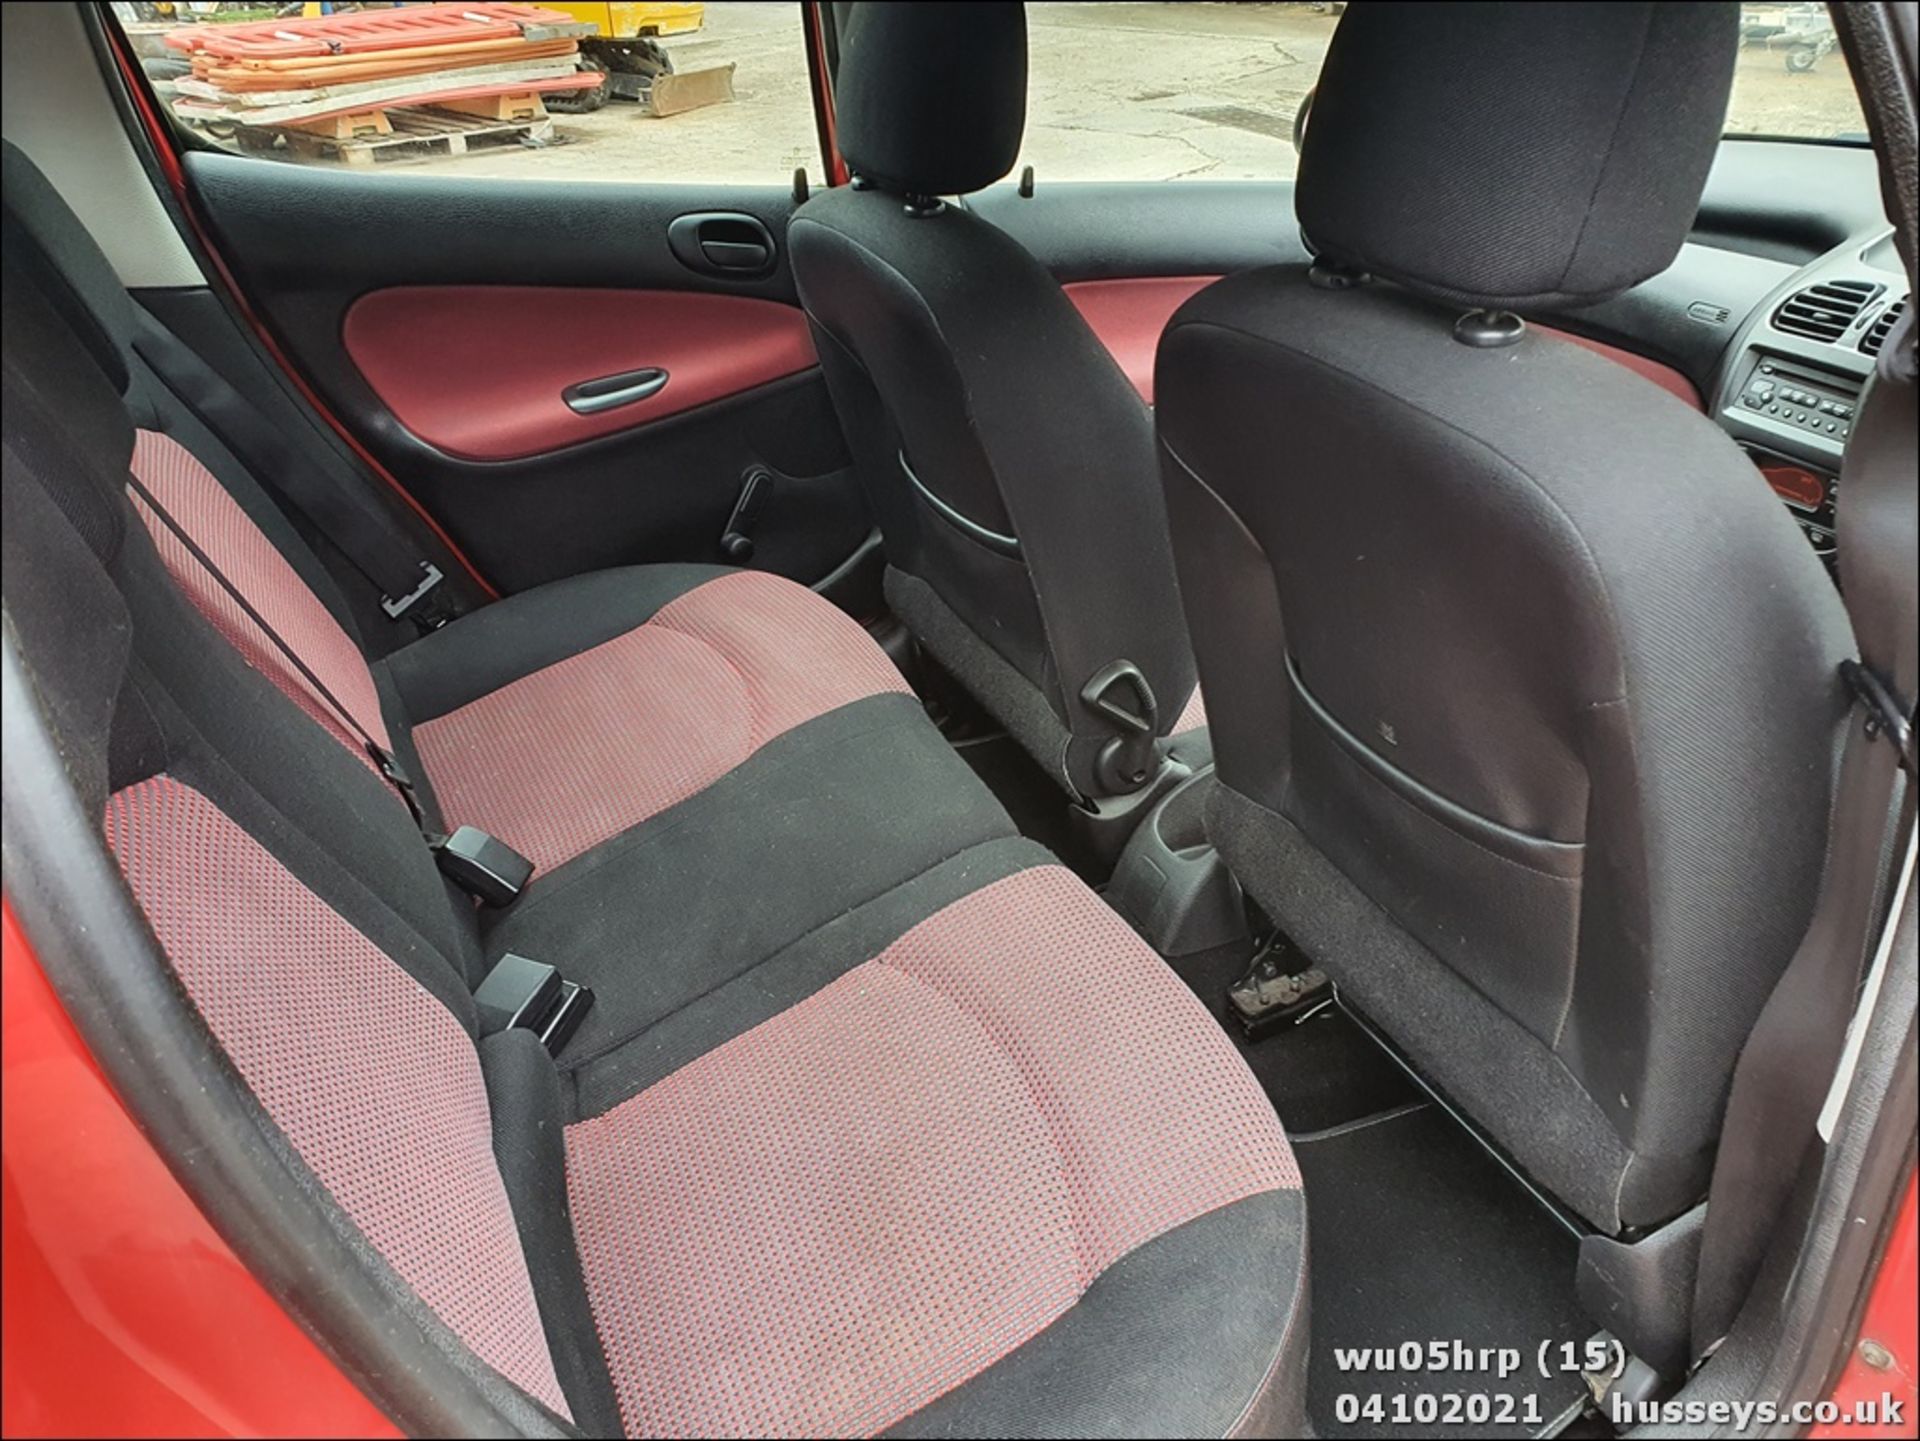 05/05 PEUGEOT 206 SPORT HDI - 1997cc 5dr Hatchback (Red, 153k) - Image 15 of 18